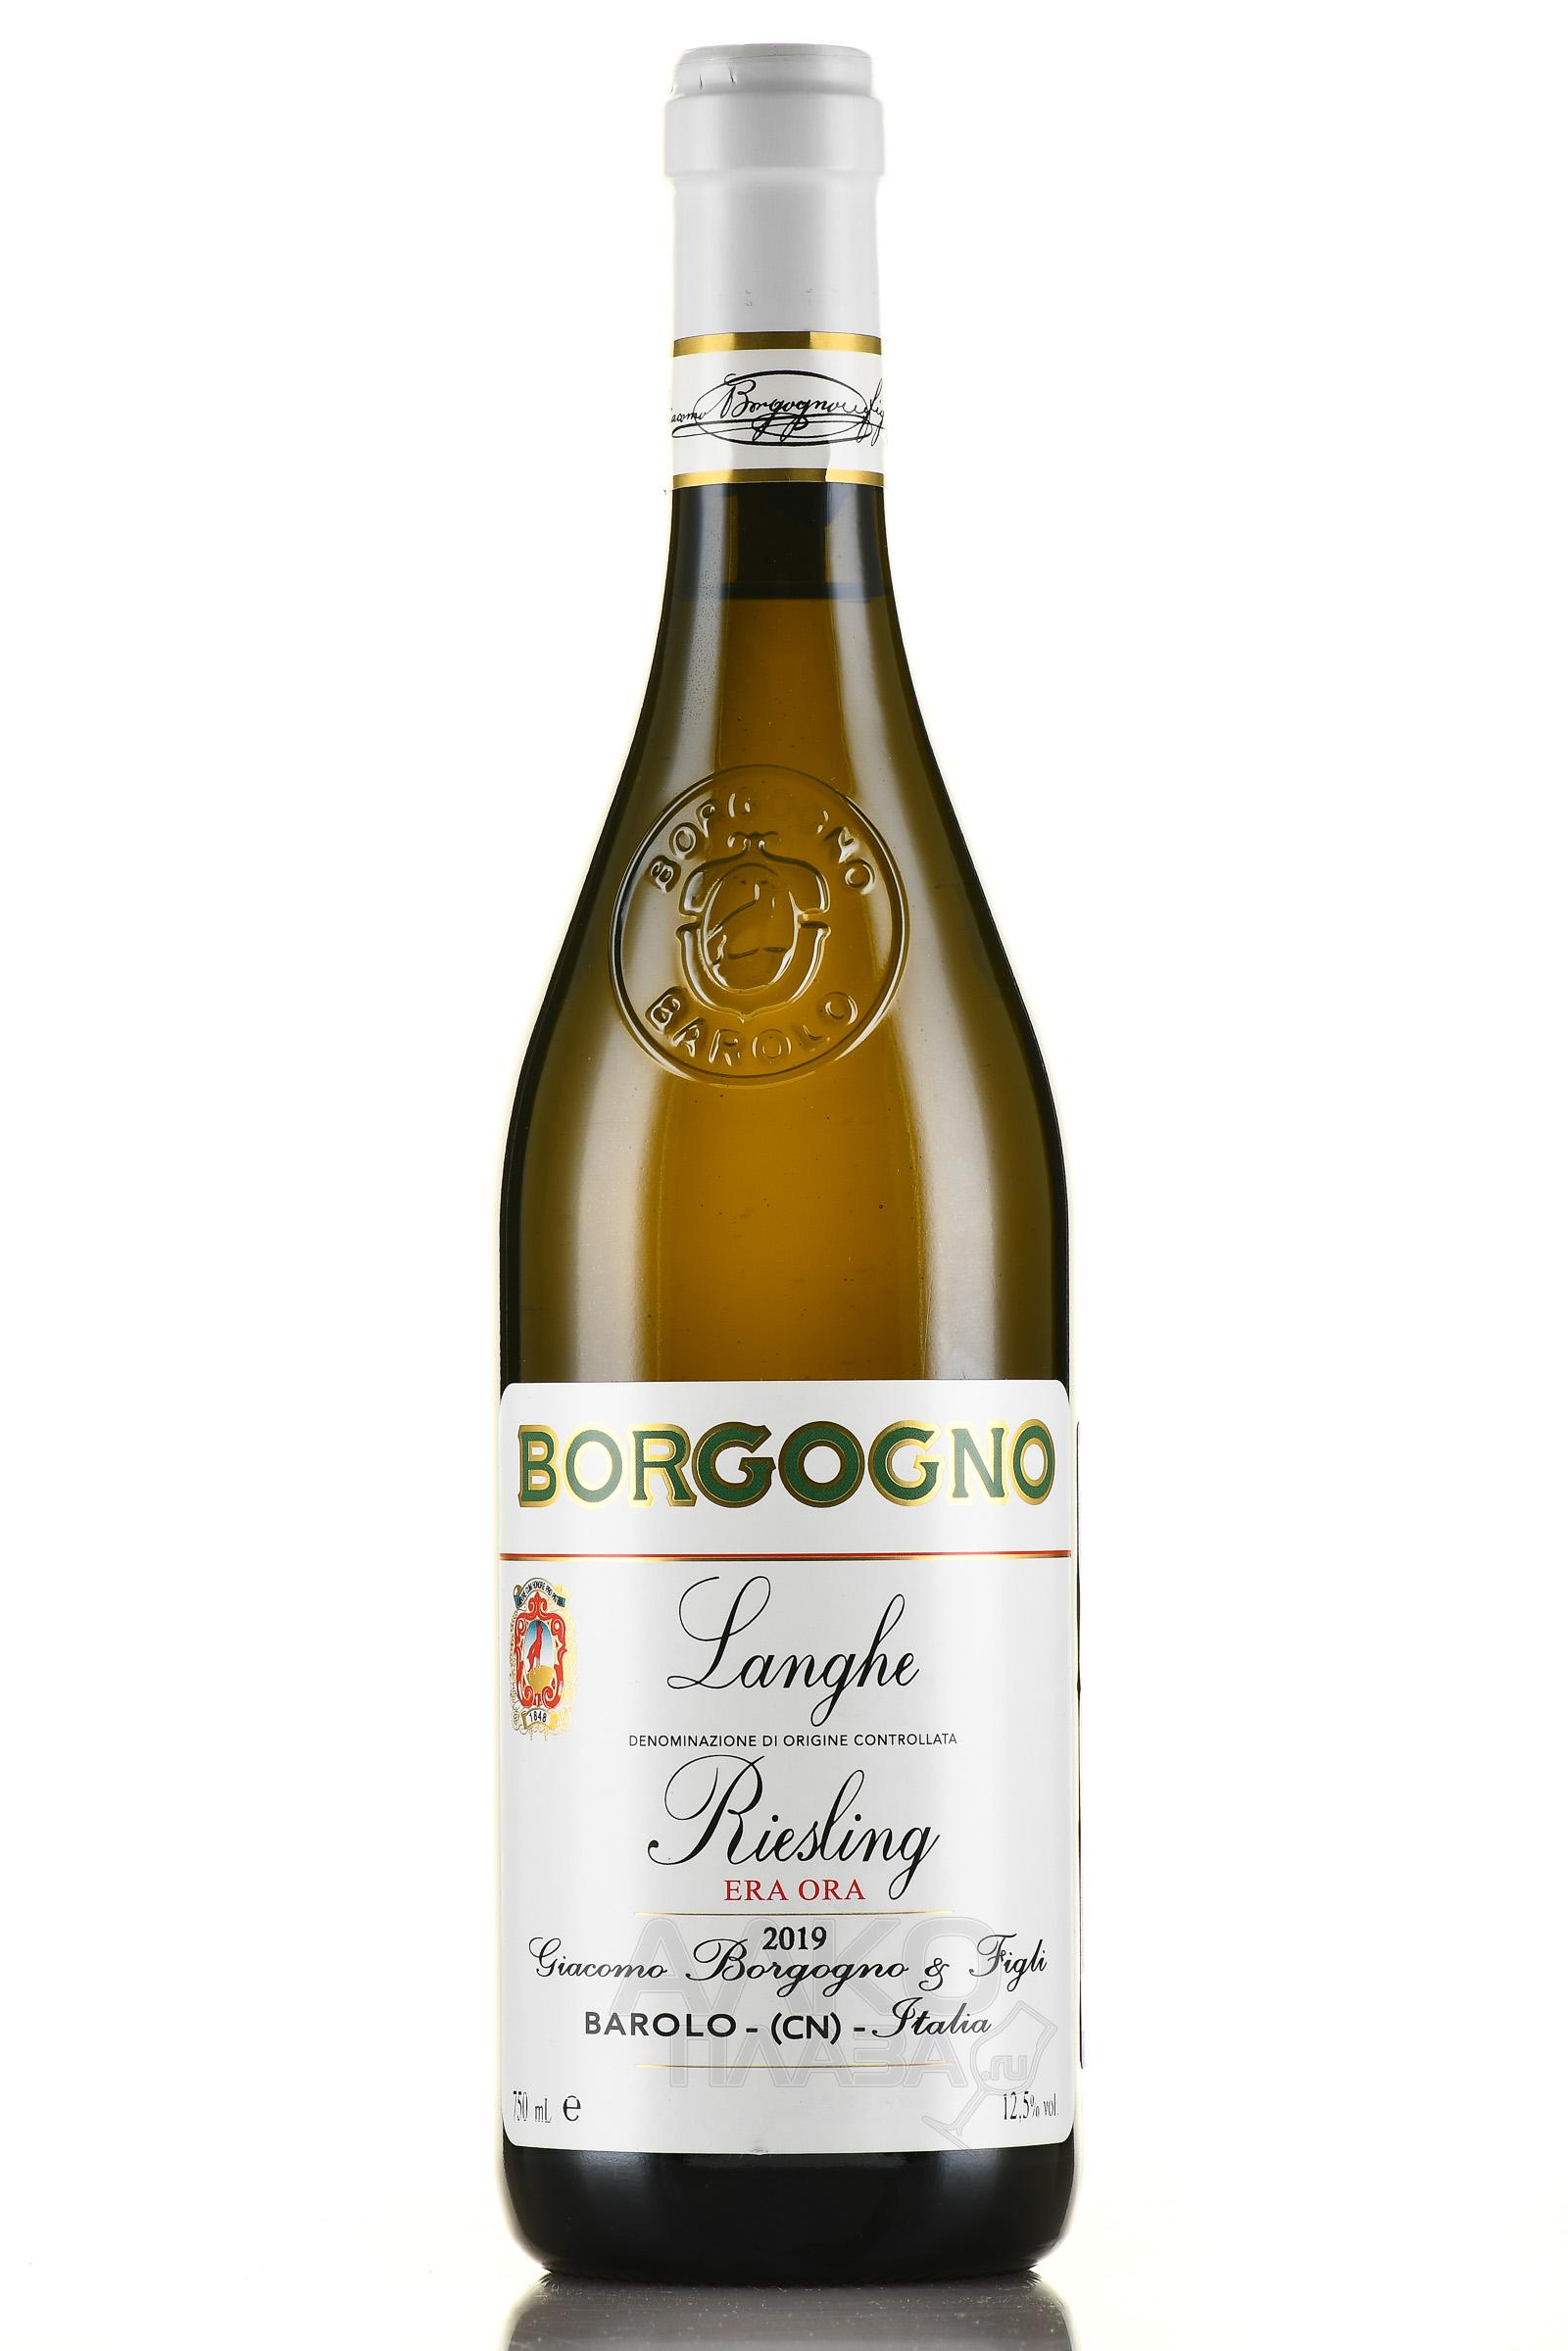 Borgogno Riesling Era Ora Langhe DOC - вино Боргоньо Рислинг Эра Ора Ланге 0.75 л белое сухое